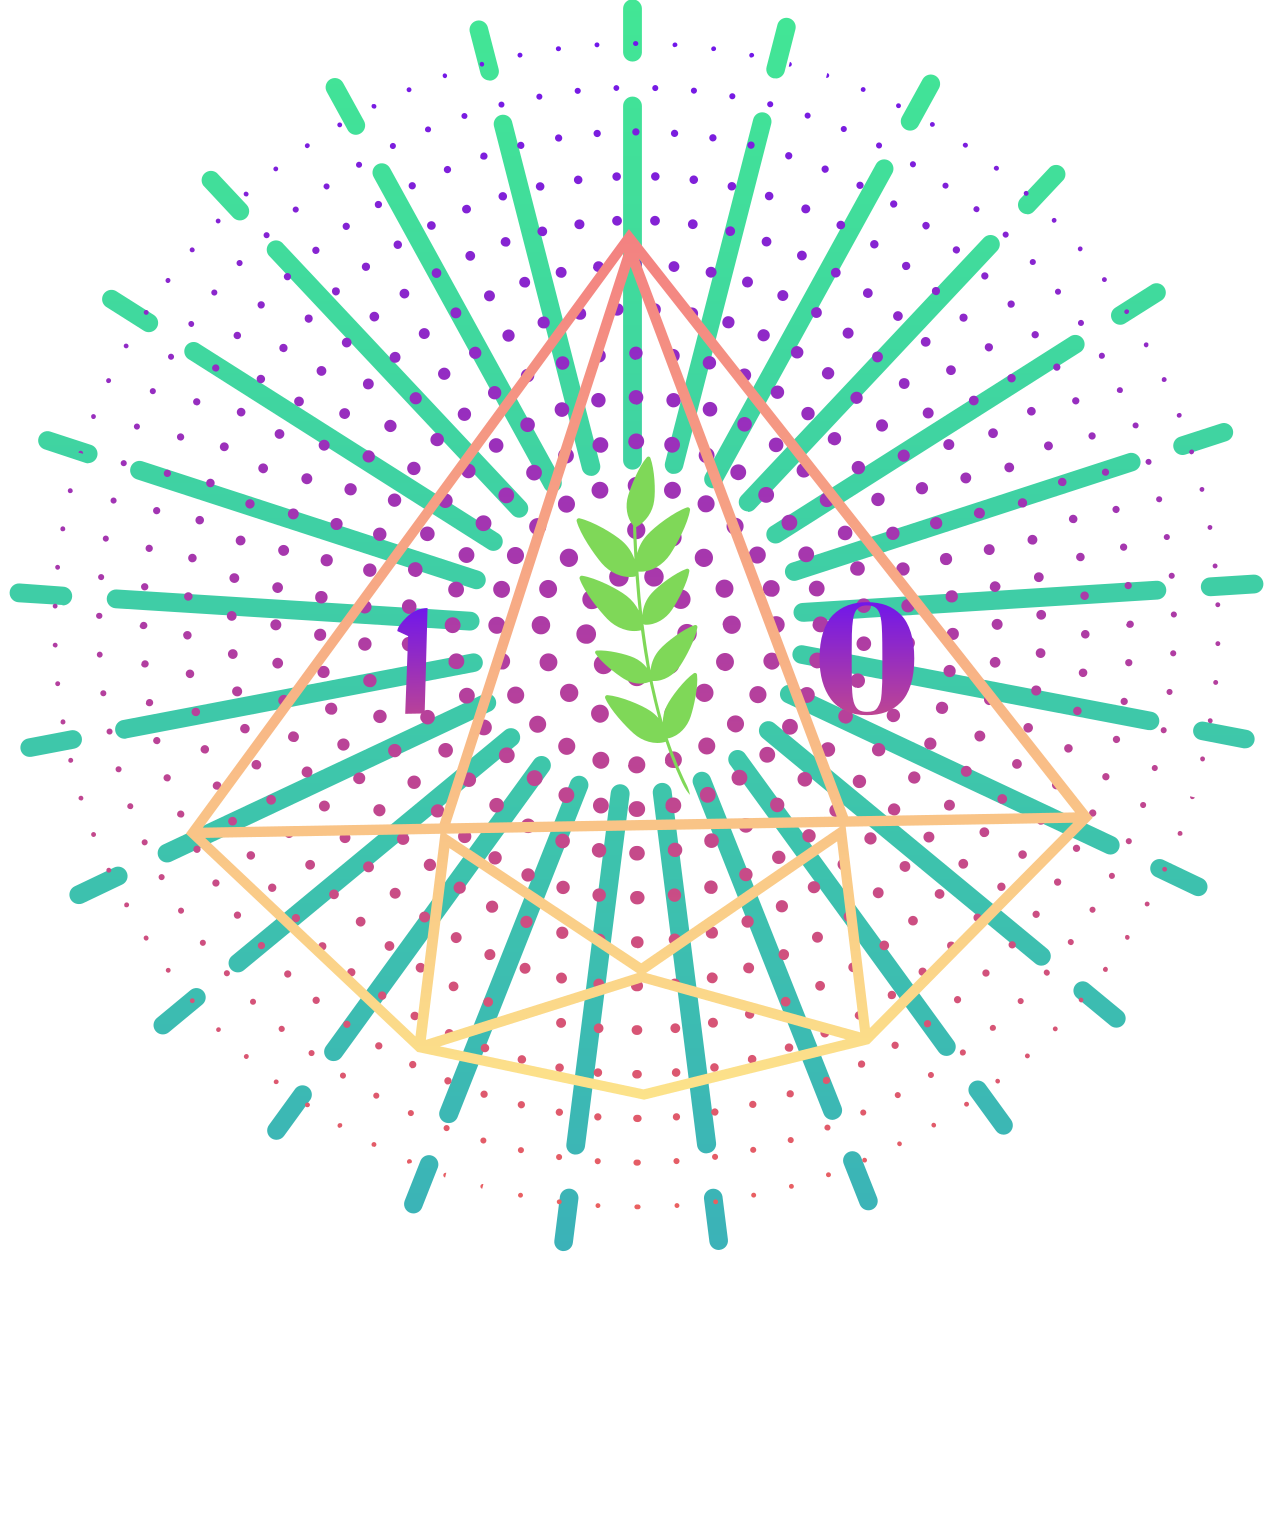 Kayzene's web page